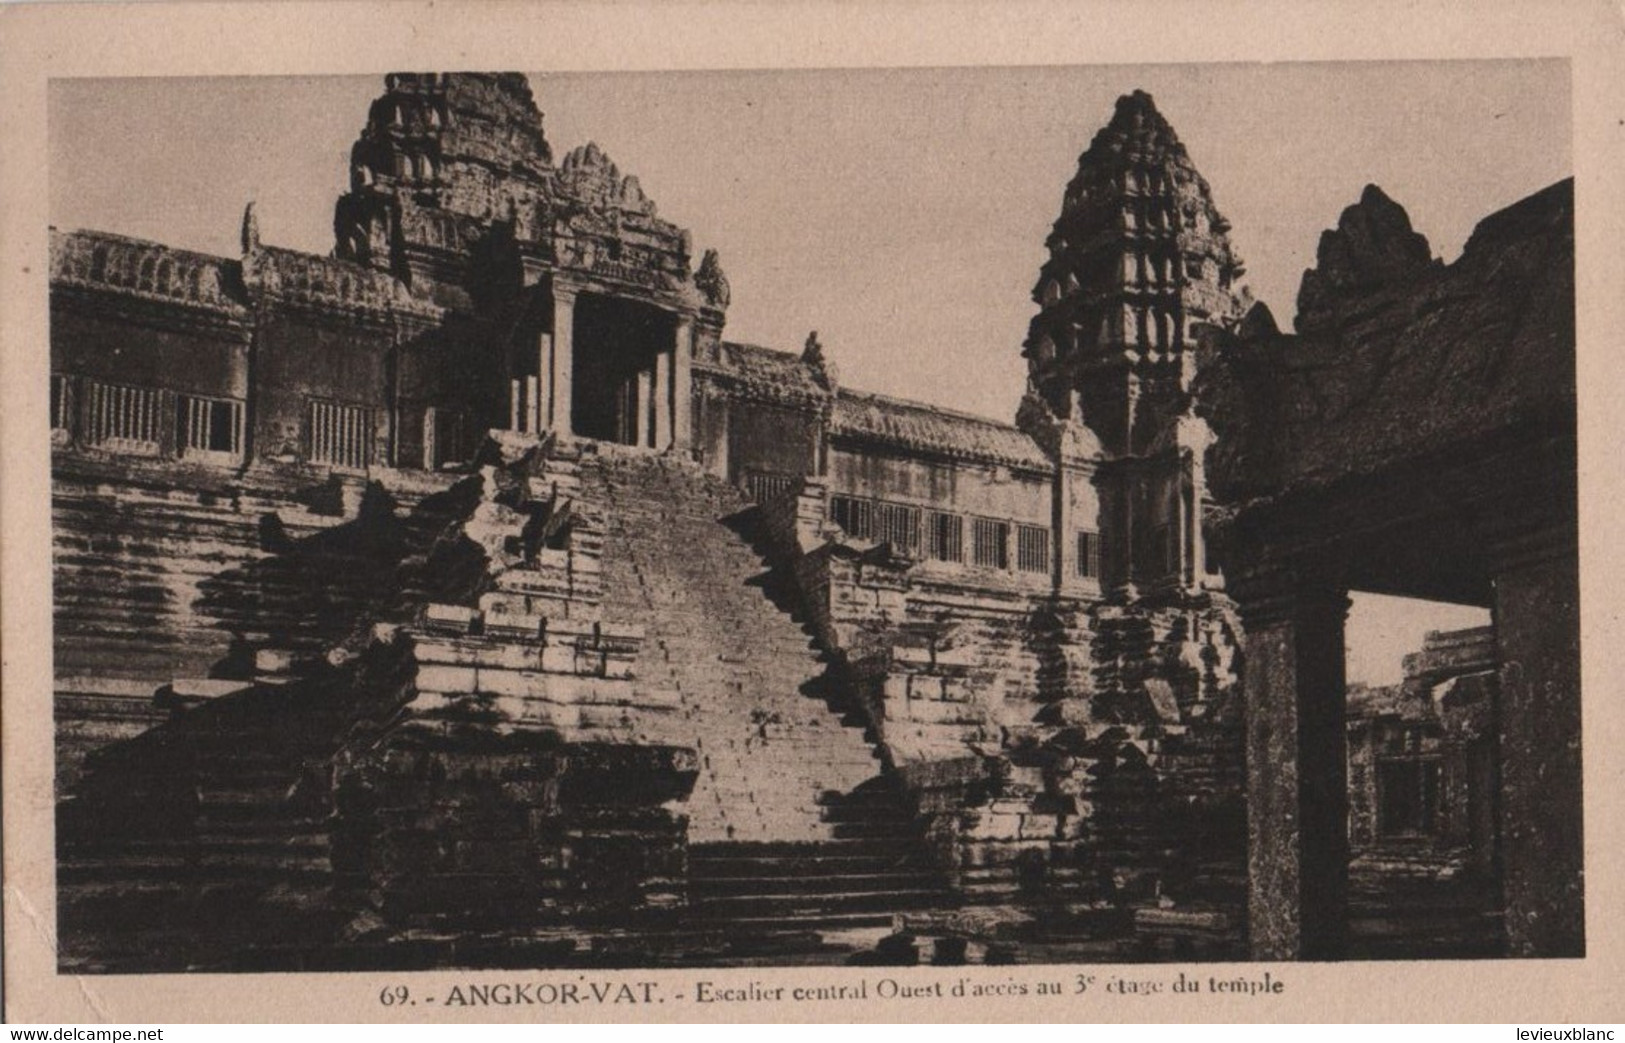 CAMBODGE /ANGKOR VAT/Esdcalier Central Ouest D'accés Au 3éme étage Du Temple /Vers 1910-1920     CPDIV358 - Cambogia